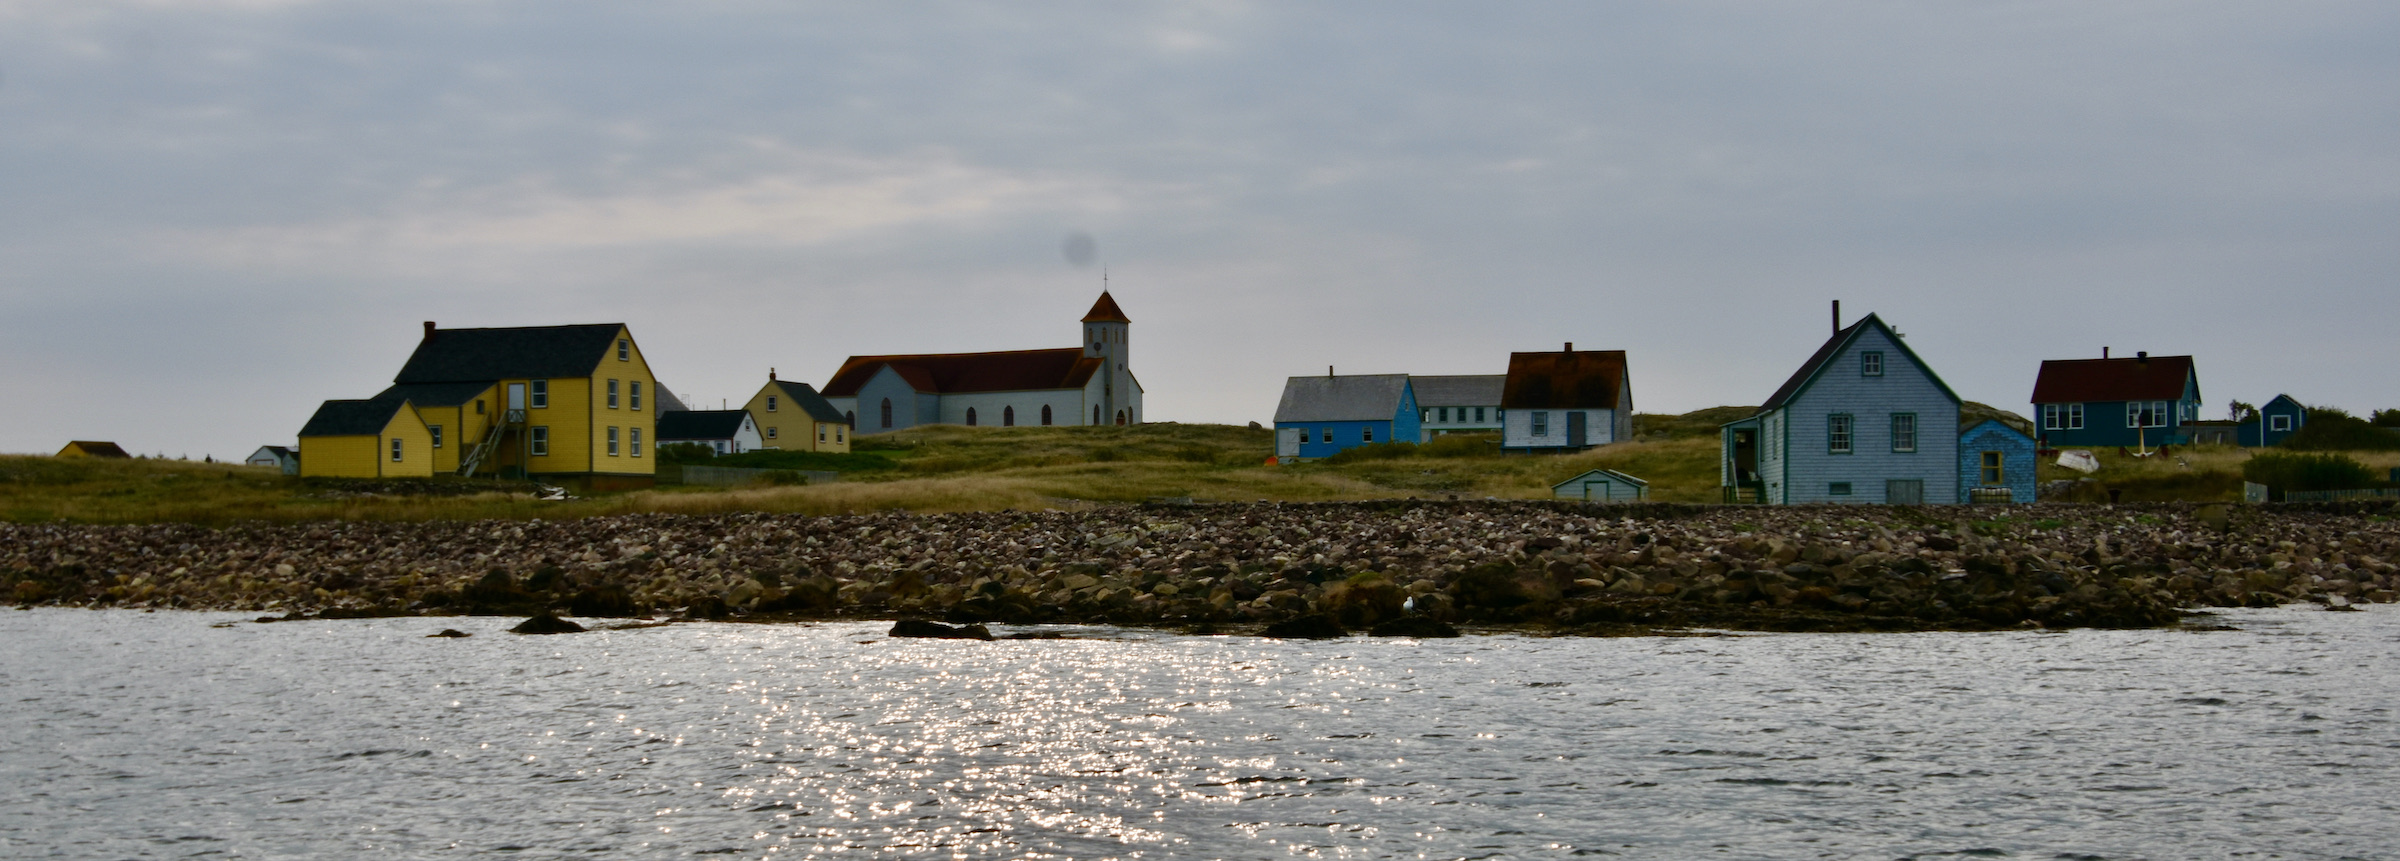 Approaching Ile aux Marins, St. Pierre & Miquelon